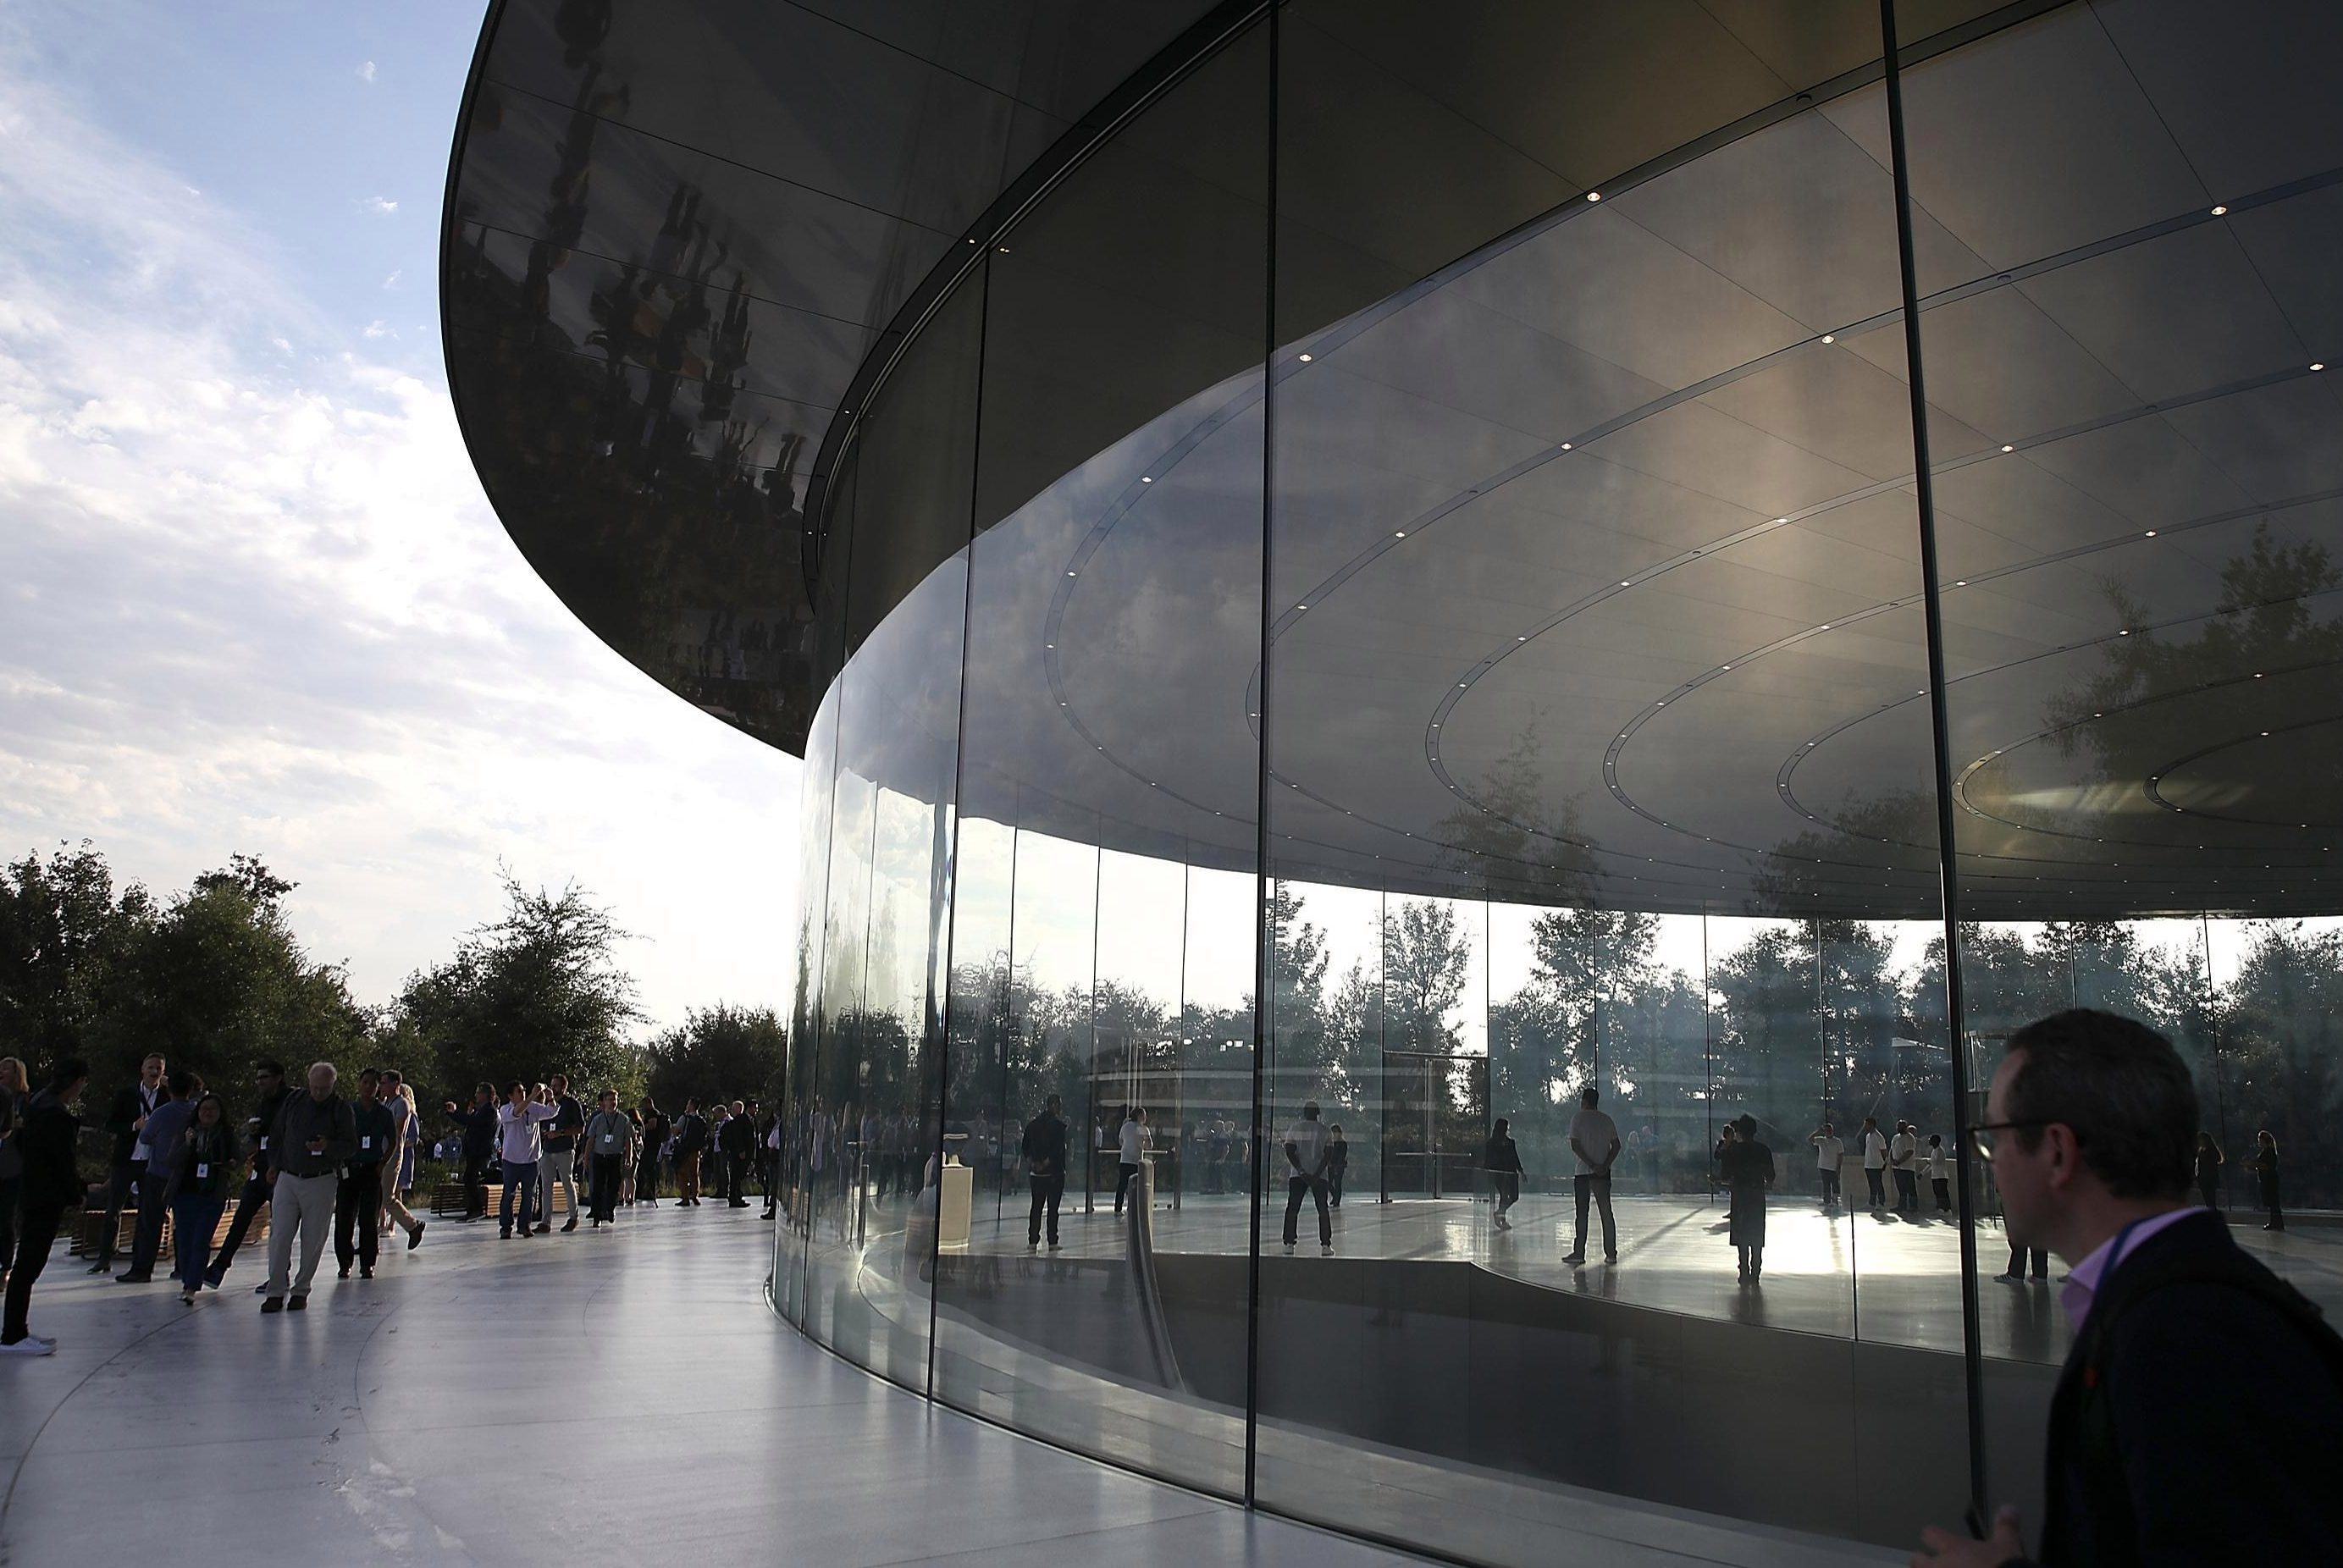  Ini bukan hanya pandangan sekilas pada produk iPhone tetapi juga raksasa teknologi itu Apple Kampus taman